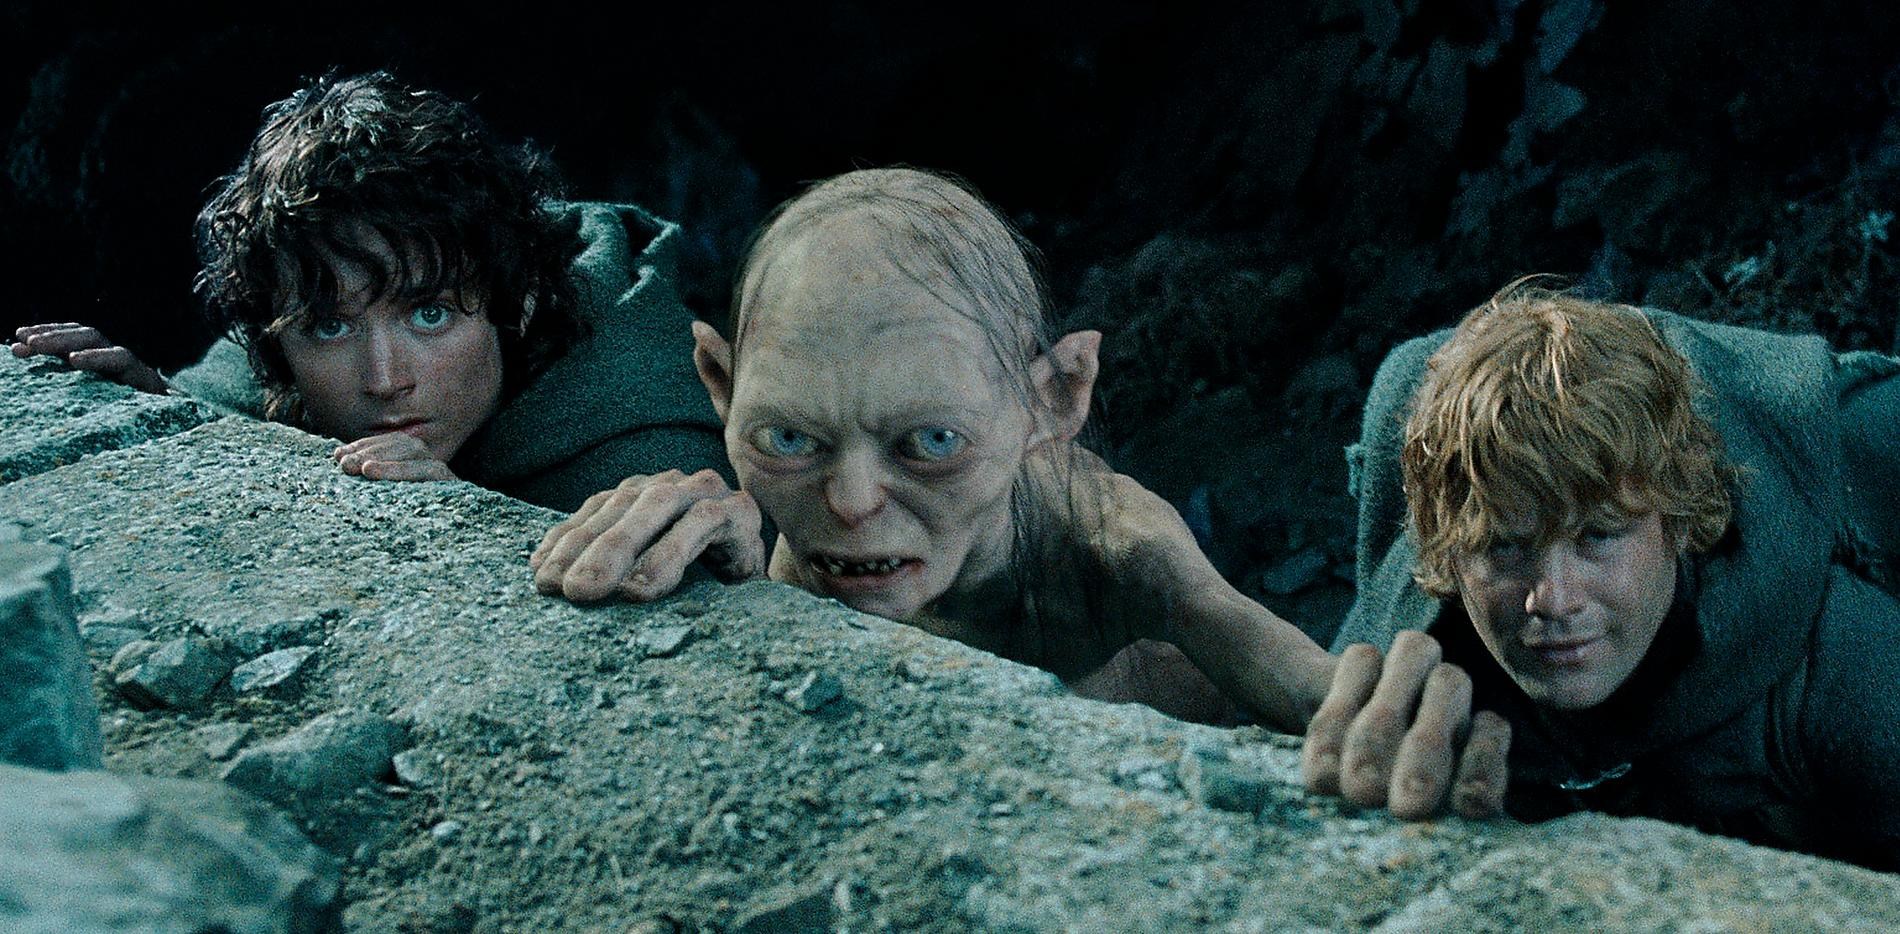 Elijah Wood som Frodo, varelsen Gollum och Sean Astin som Sam i ”Sagan om konungens återkomst”.